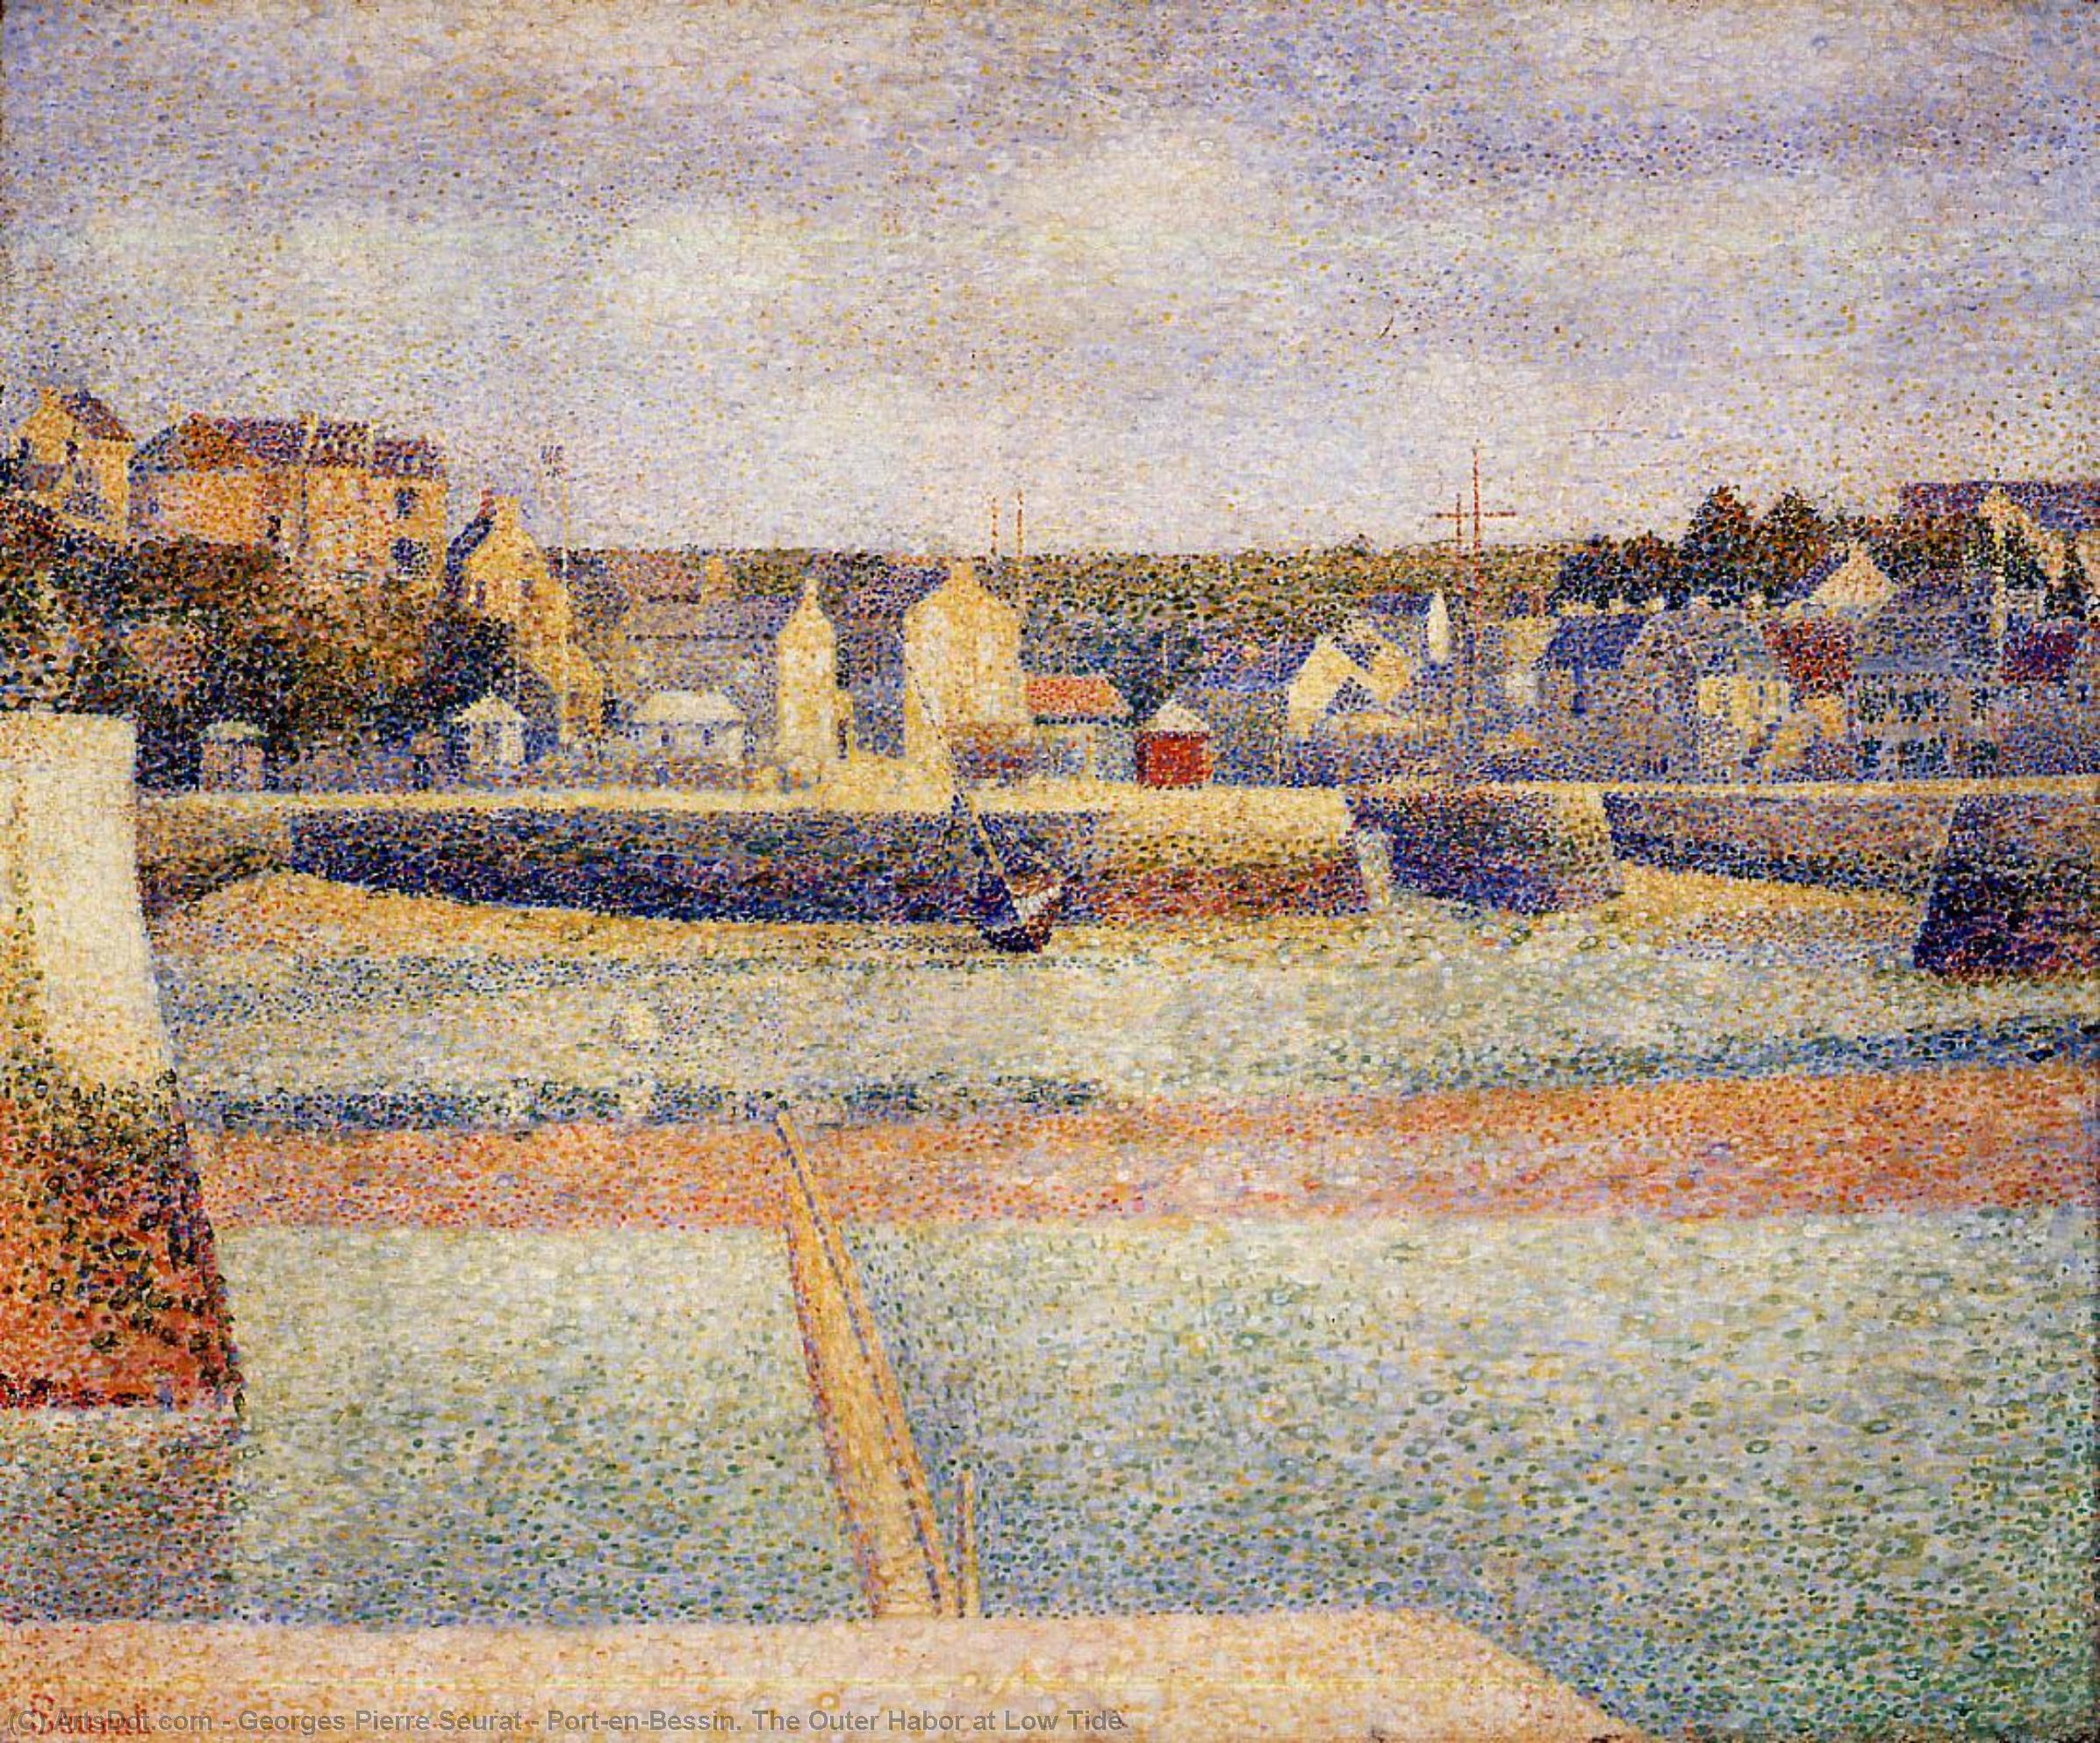 WikiOO.org - Енциклопедия за изящни изкуства - Живопис, Произведения на изкуството Georges Pierre Seurat - Port-en-Bessin. The Outer Habor at Low Tide